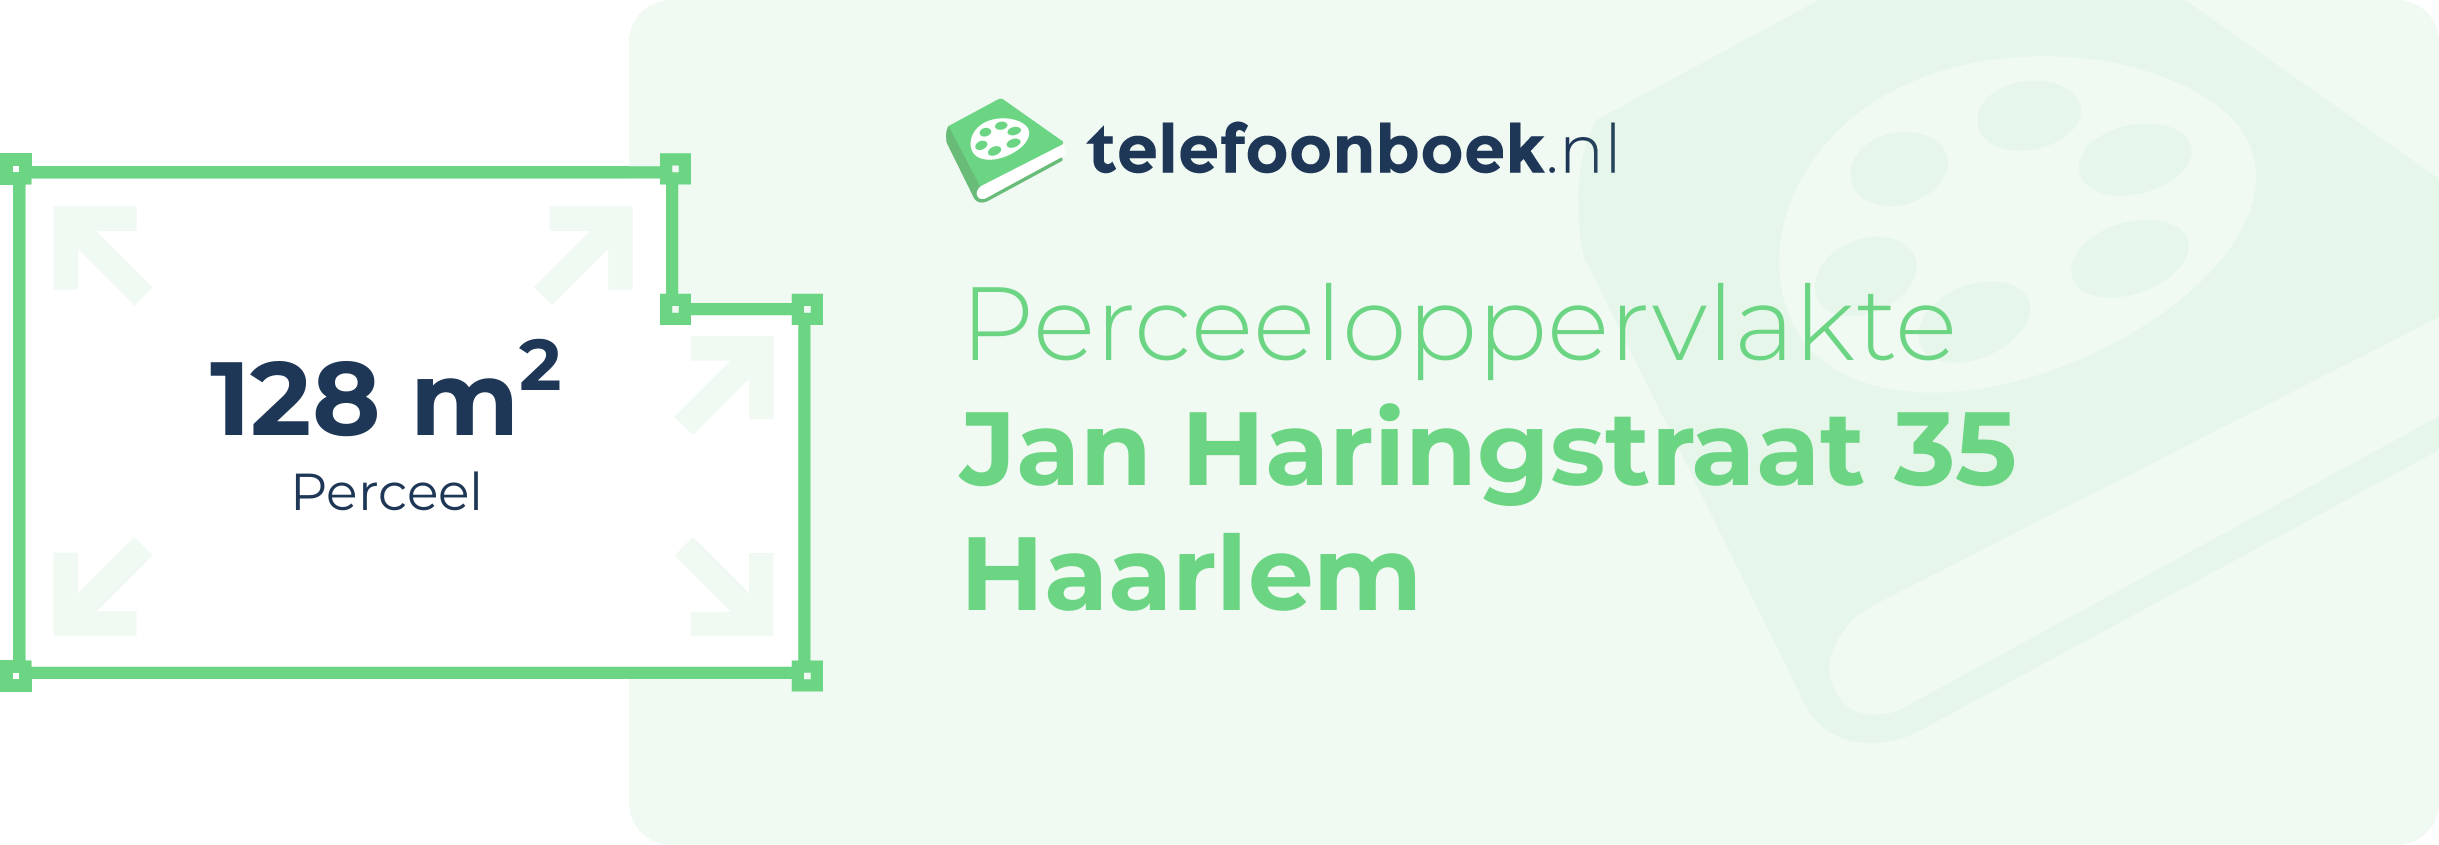 Perceeloppervlakte Jan Haringstraat 35 Haarlem